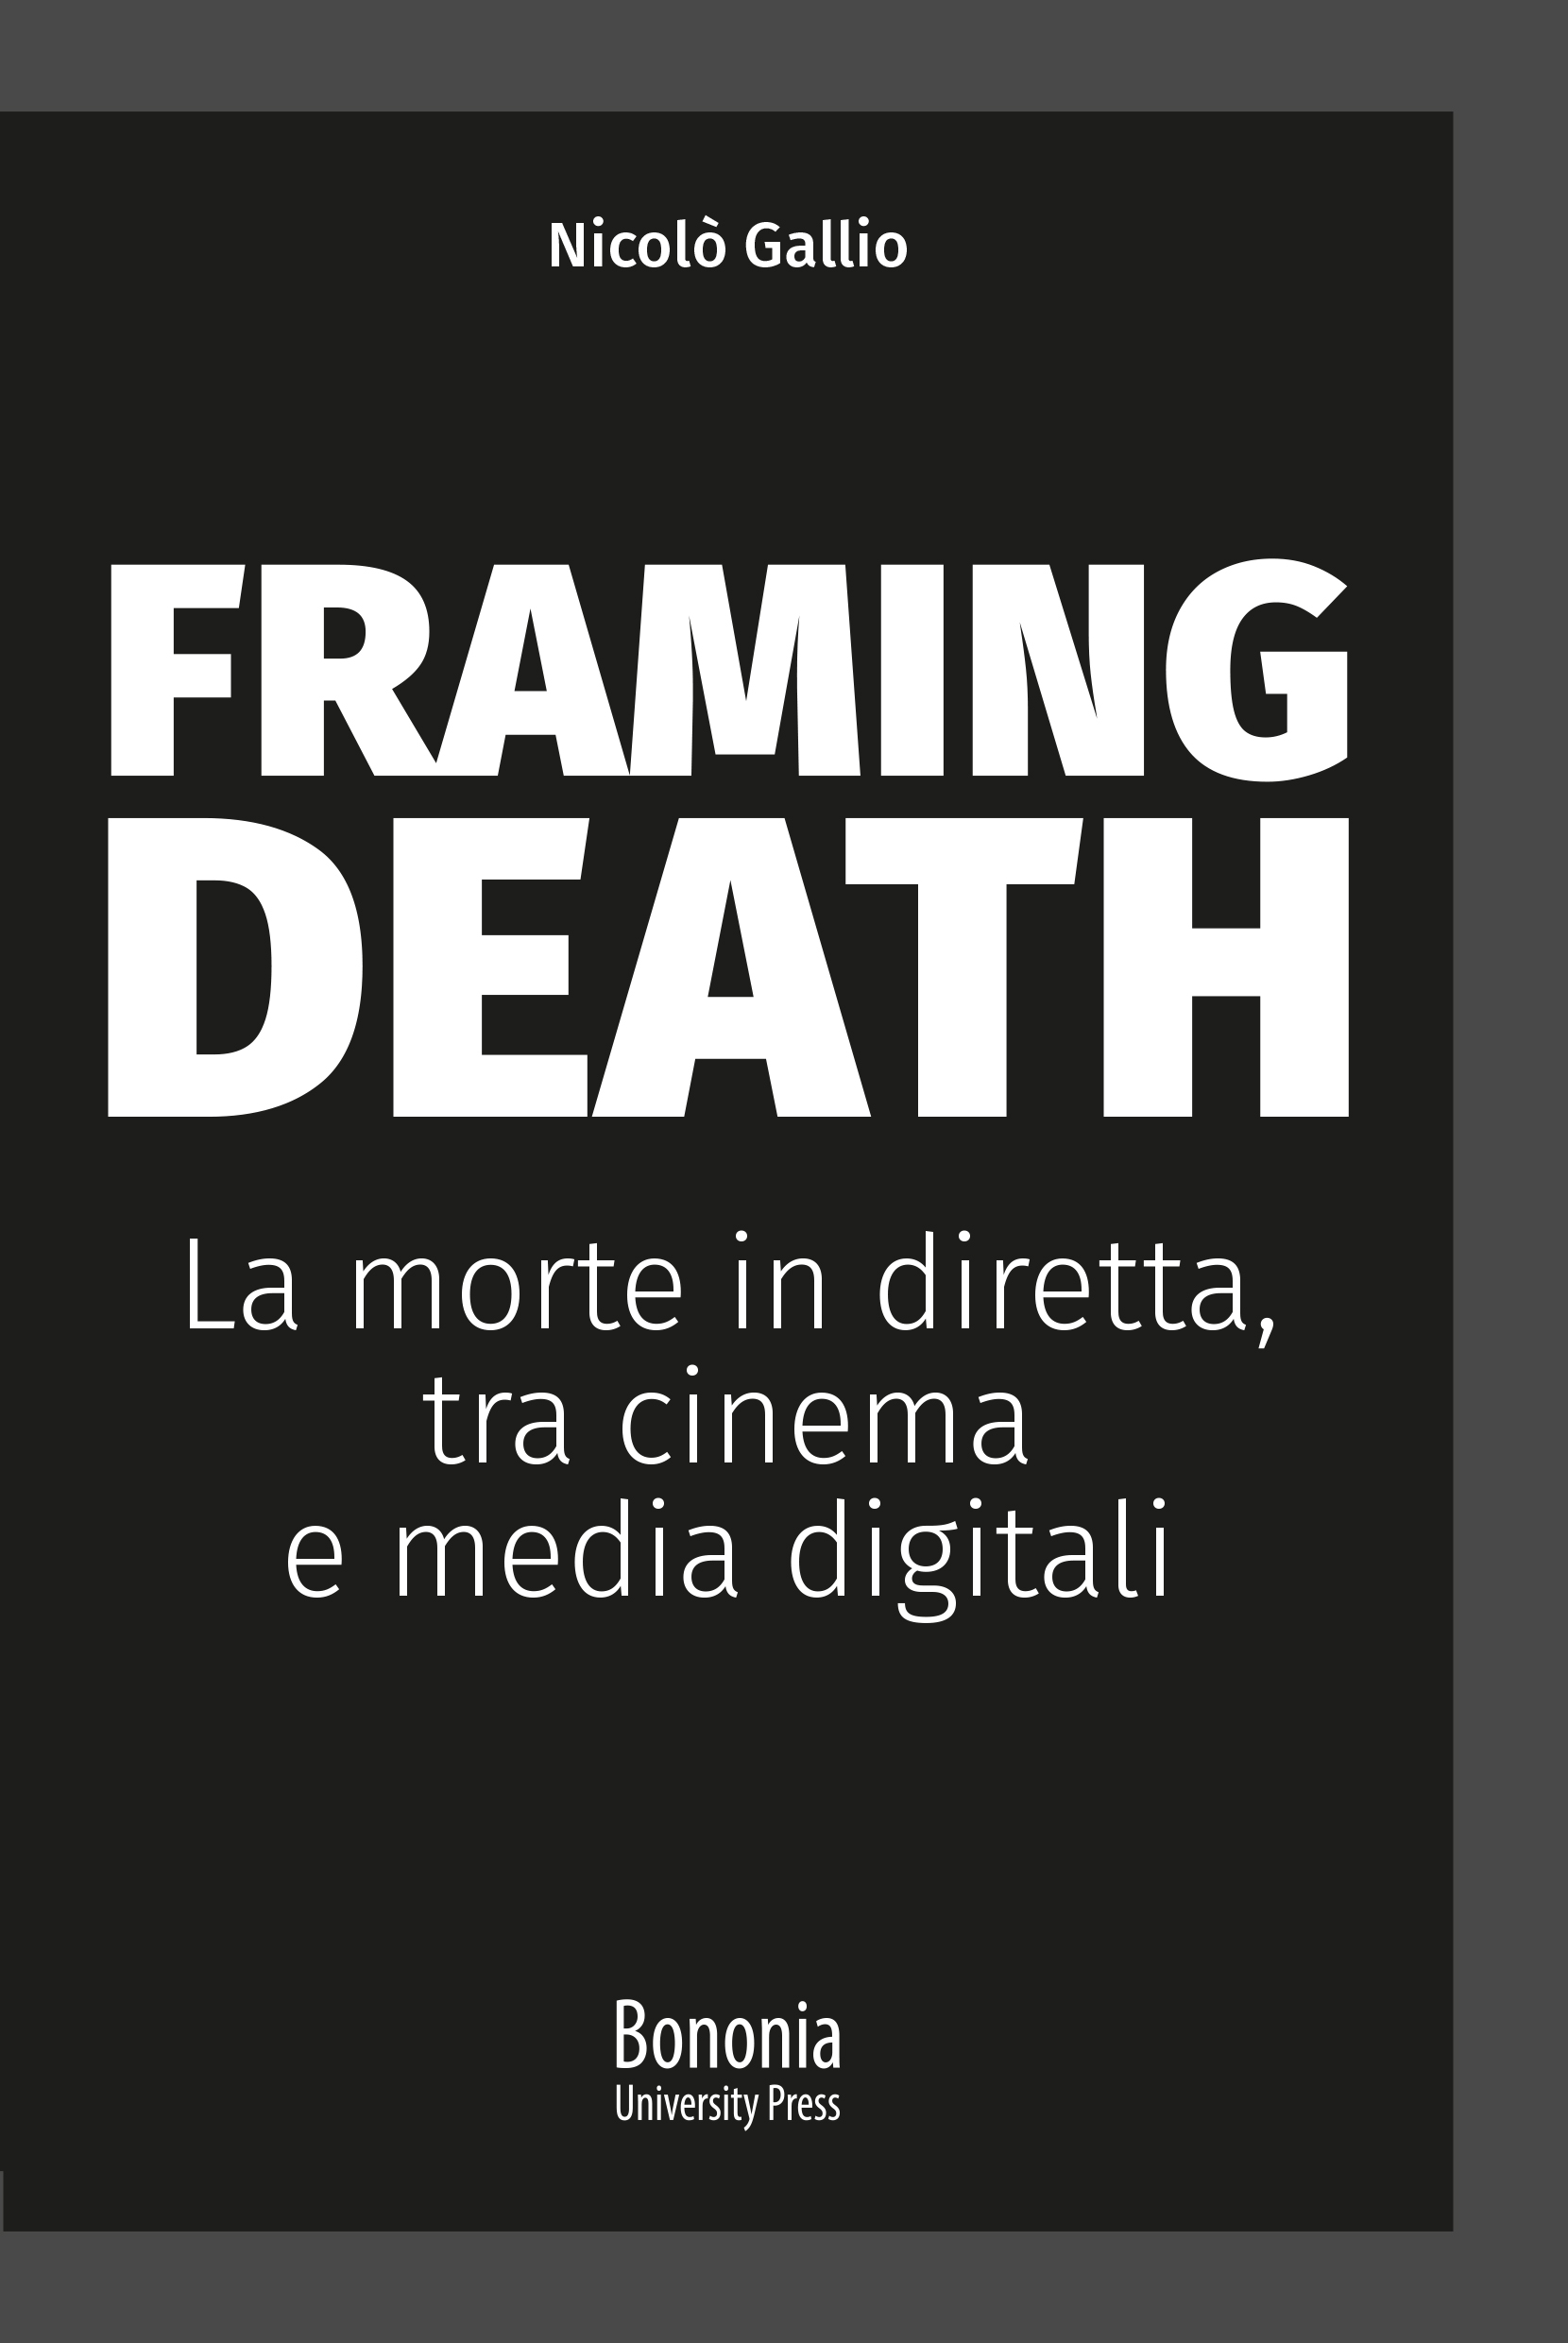 Uscito “Framing Death”, libro sulla morte in diretta a cinema (e non solo)